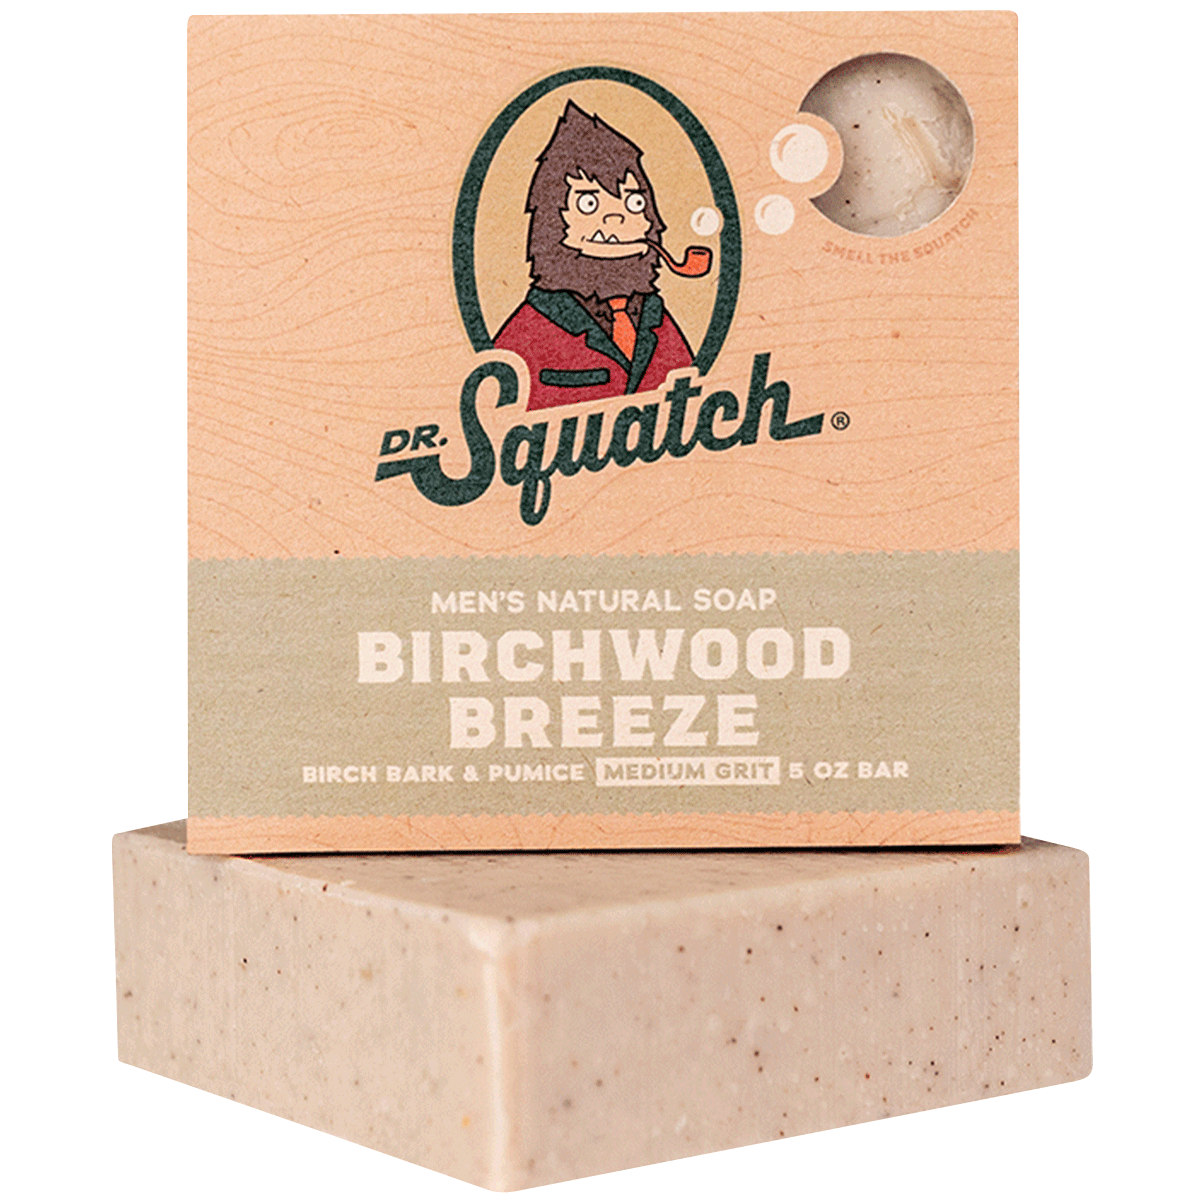 Birchwood Breeze Dr. Squatch